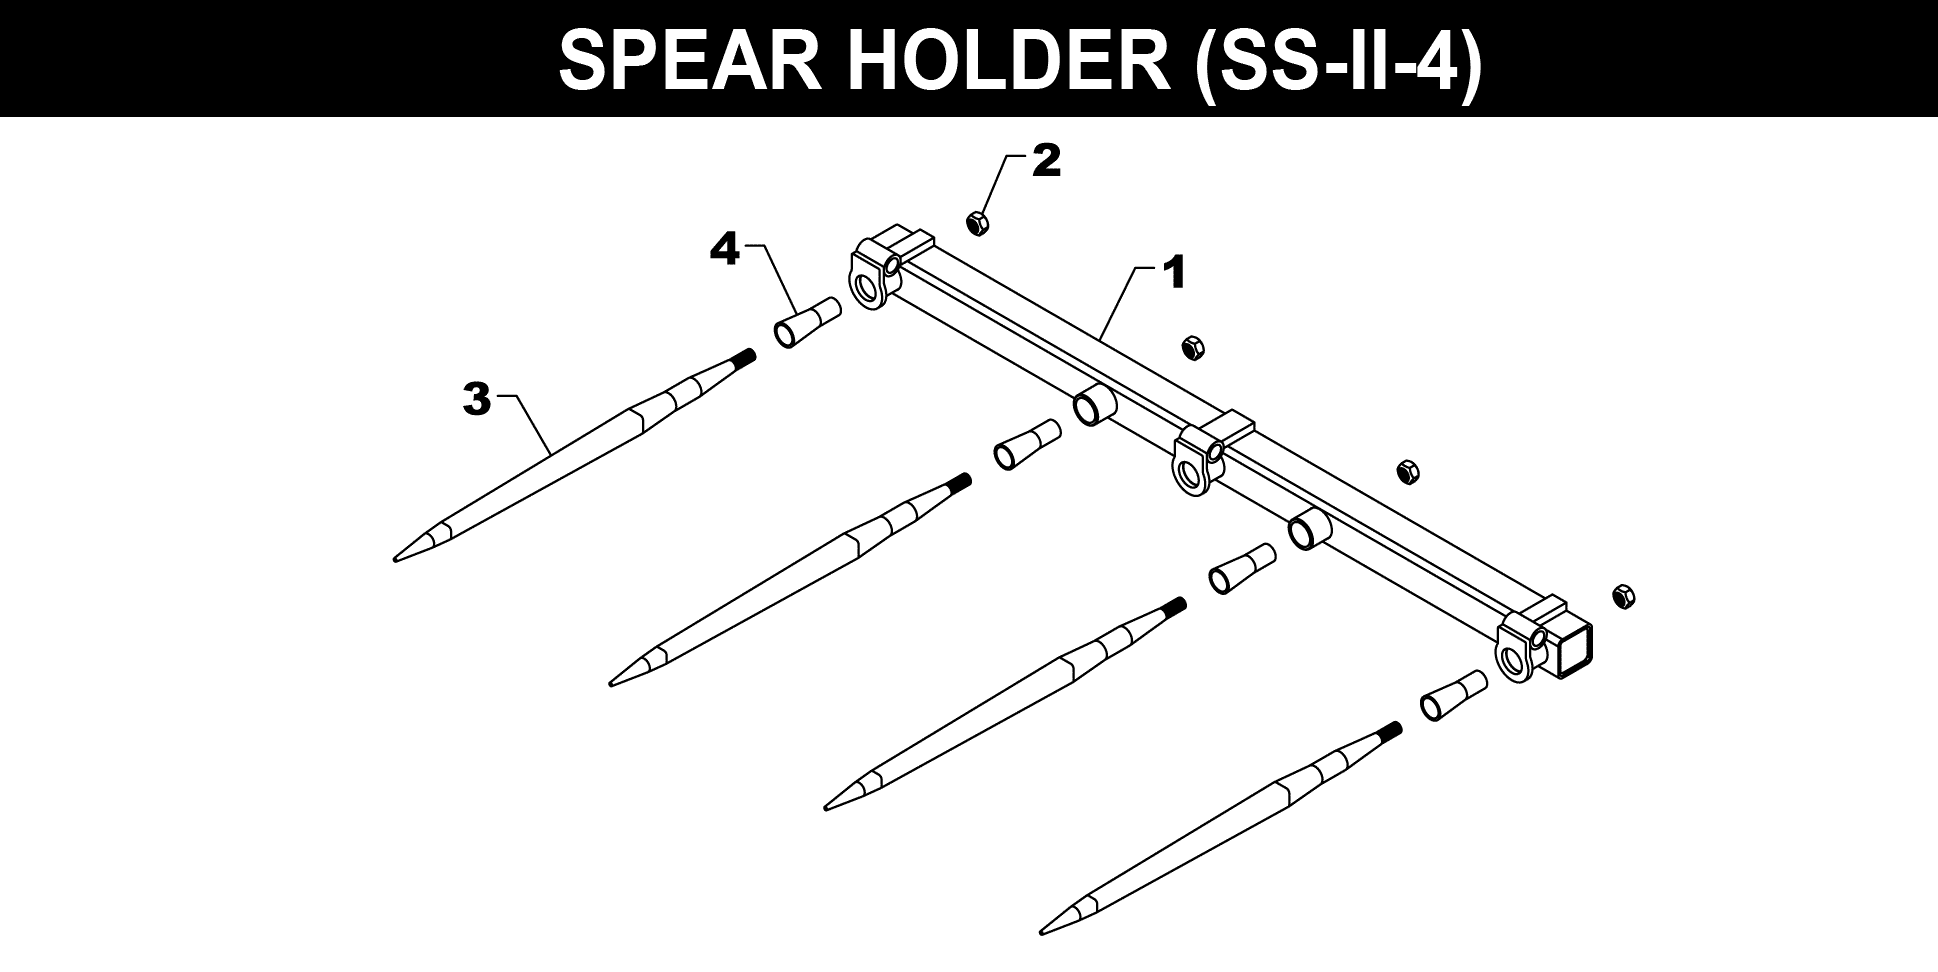 SS-II-4 Spear Holder